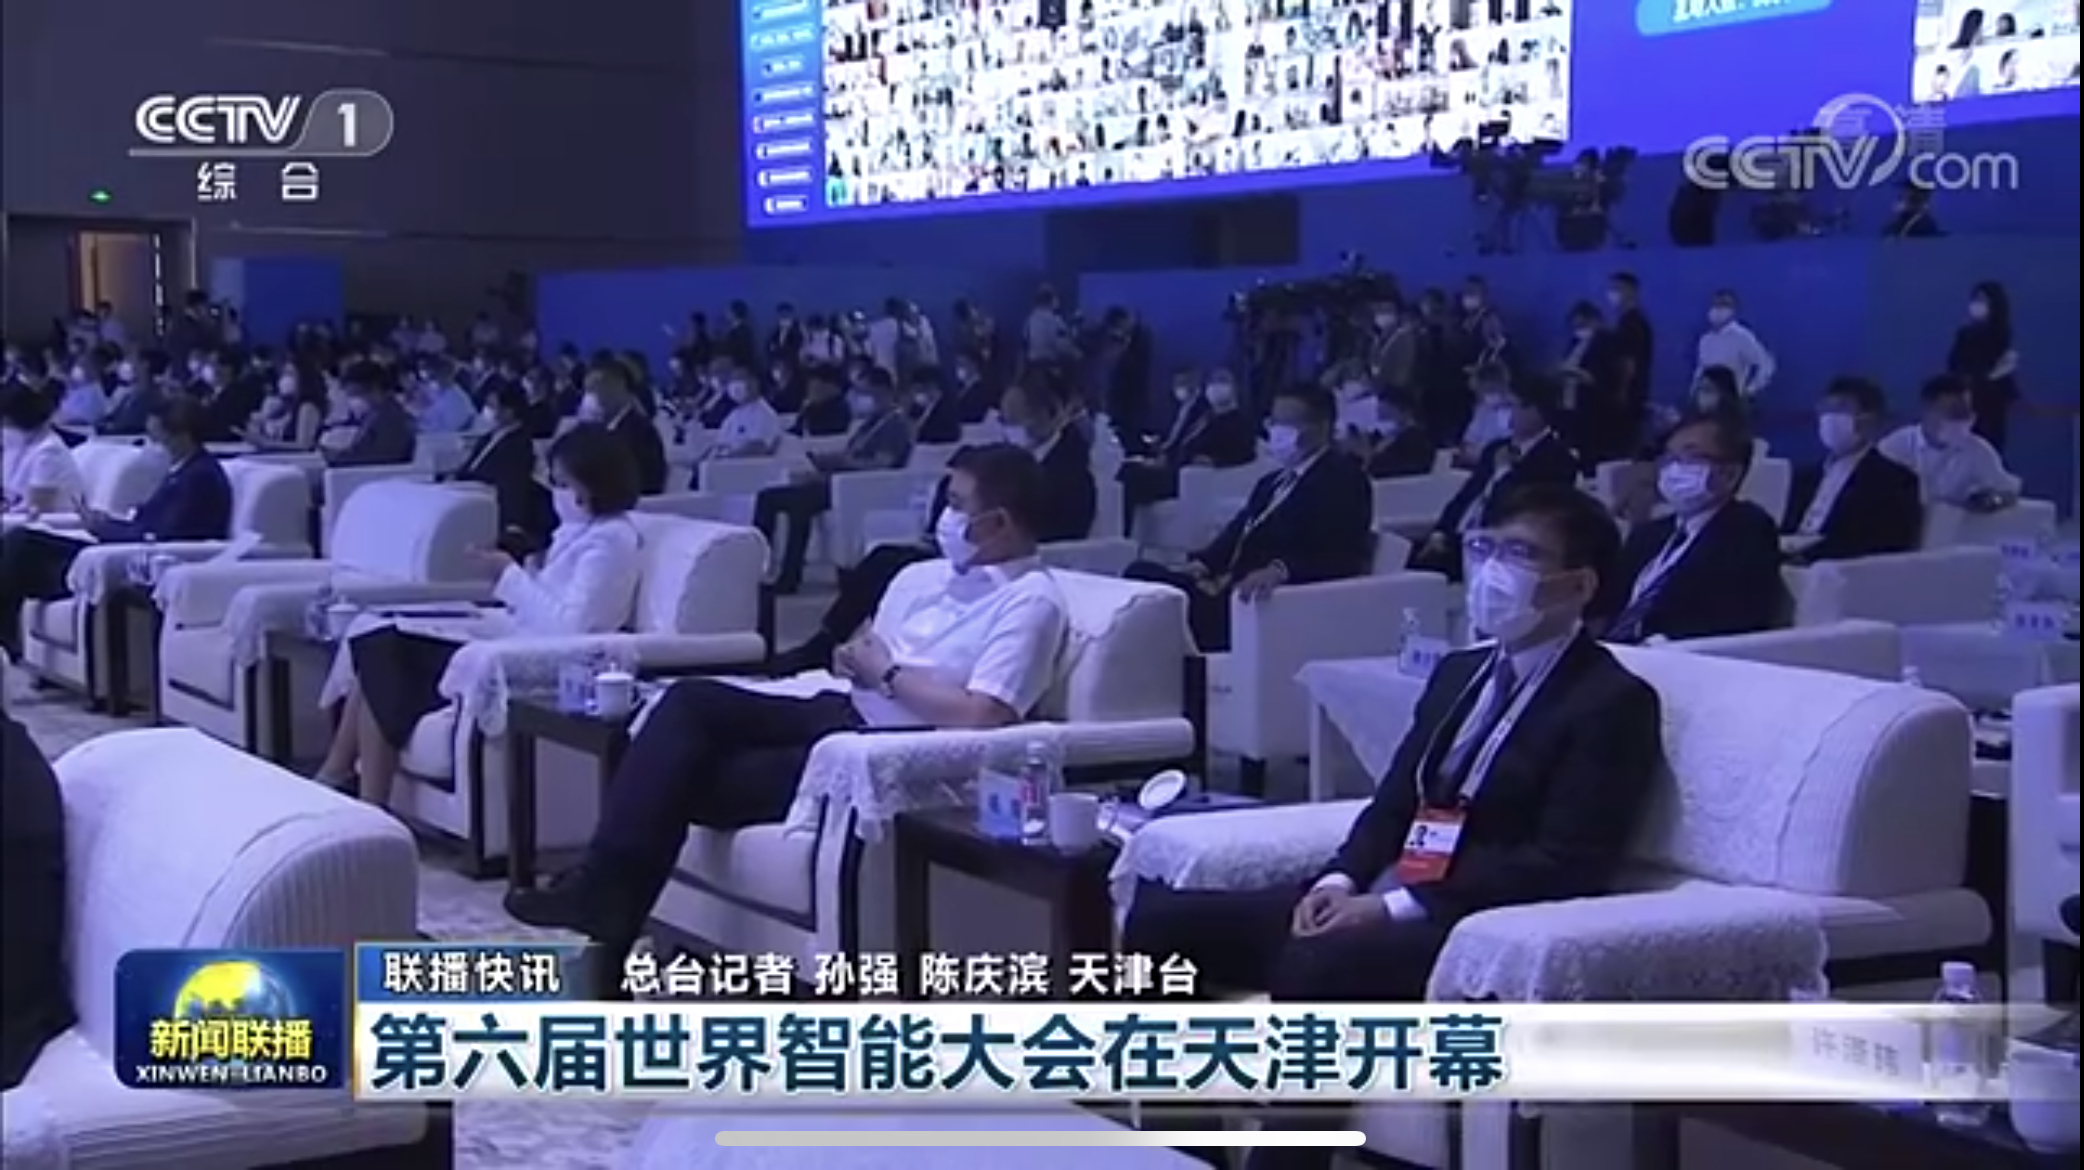 云账户董事长杨晖出席2021网信企业发展和社会责任论坛并作演讲 171